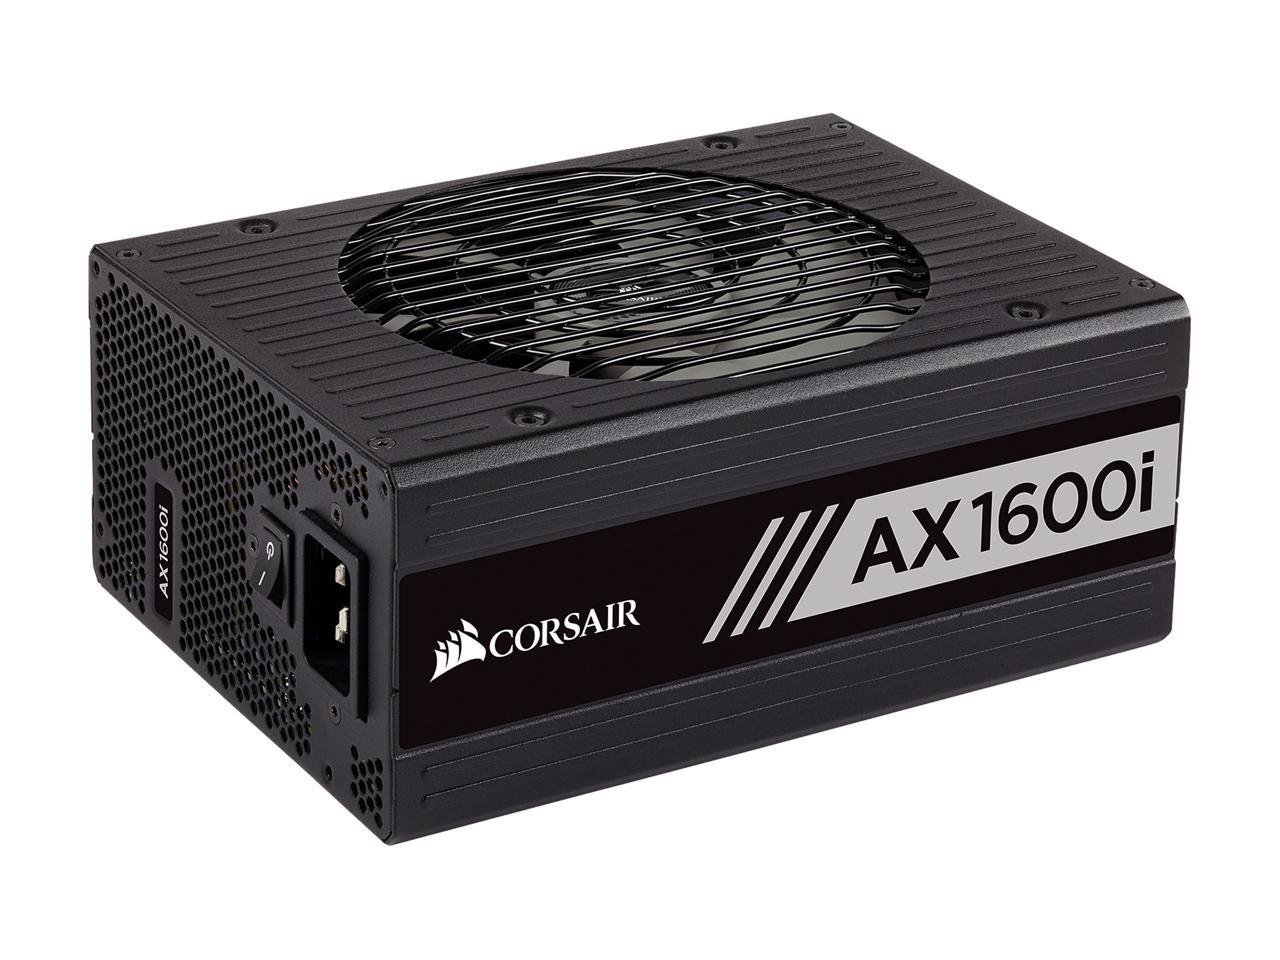 Corsair AX1600i Digital ATX 1600 Watt Fully Modular Power Supply